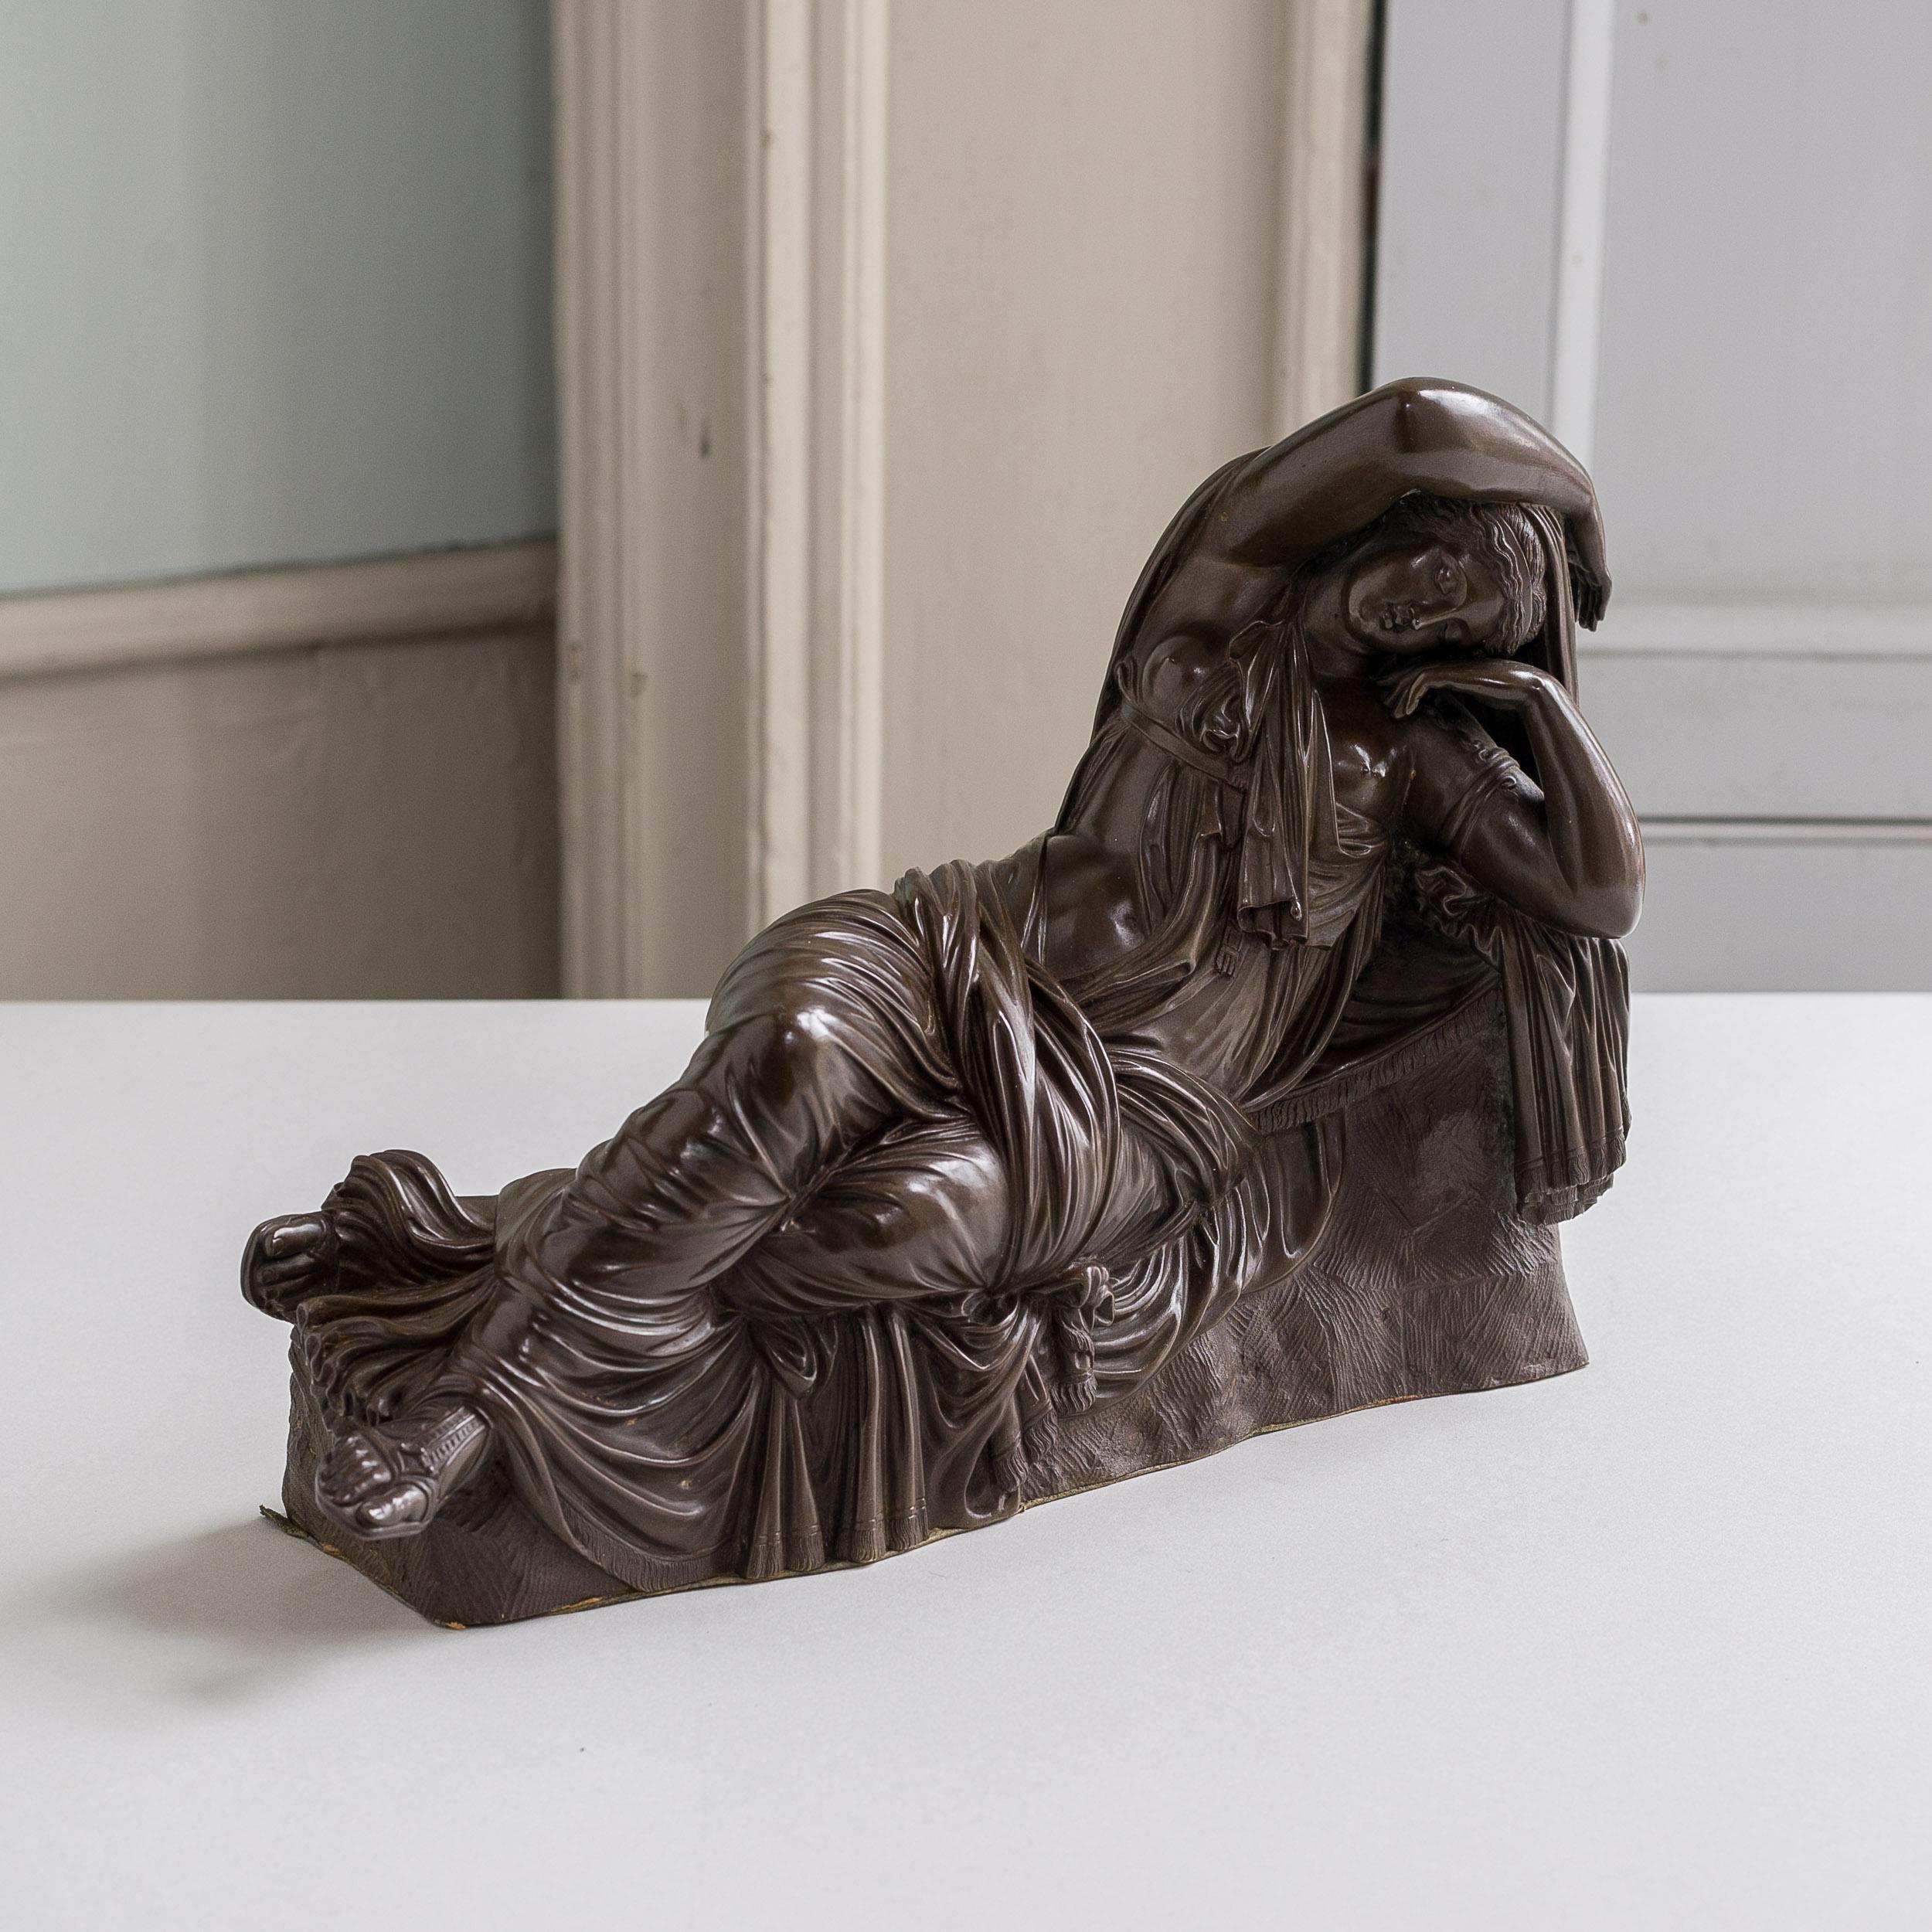 Un bronze français du XIXe siècle représentant l'Ariane endormie, d'après l'antique, l'